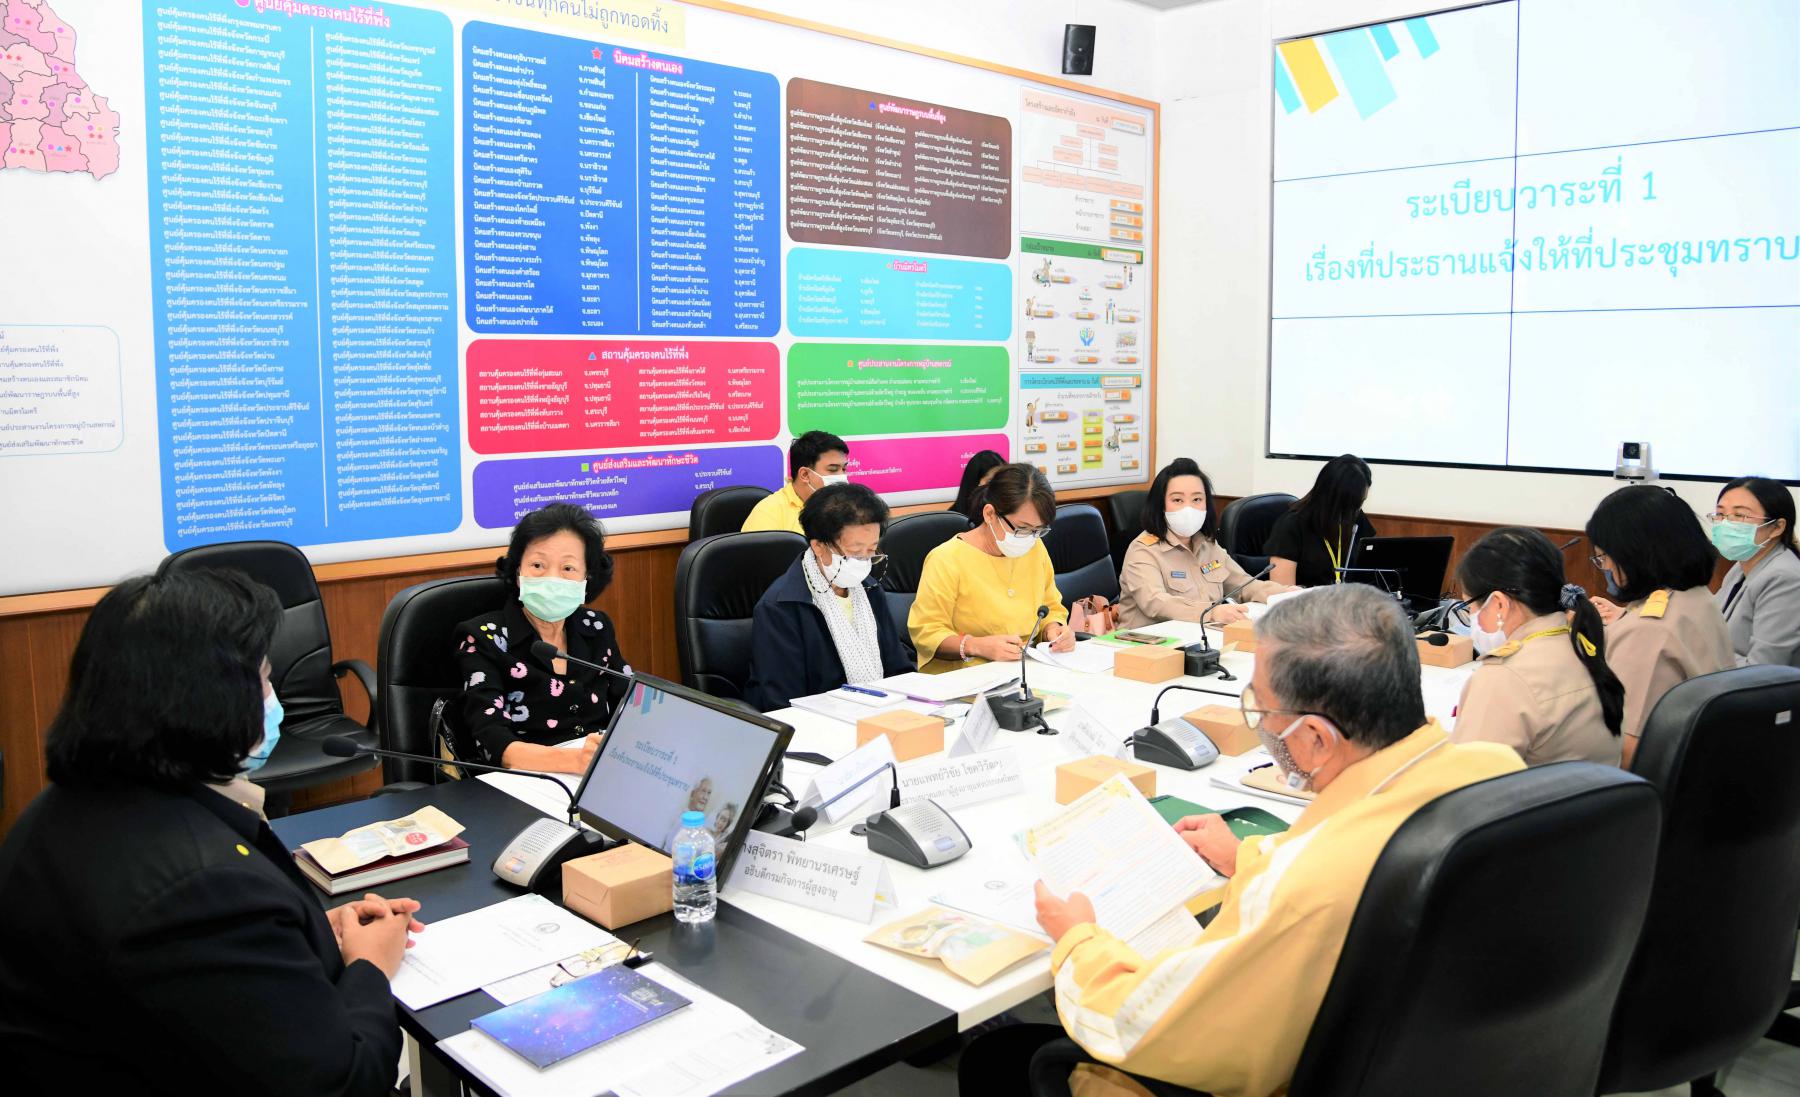 ประชุมหารือการดำเนินงานโครงการพลังผู้สูงอายุไทย ร่วมใจพัฒนาสังคมเพื่อความมั่นคงของมนุษย์ 